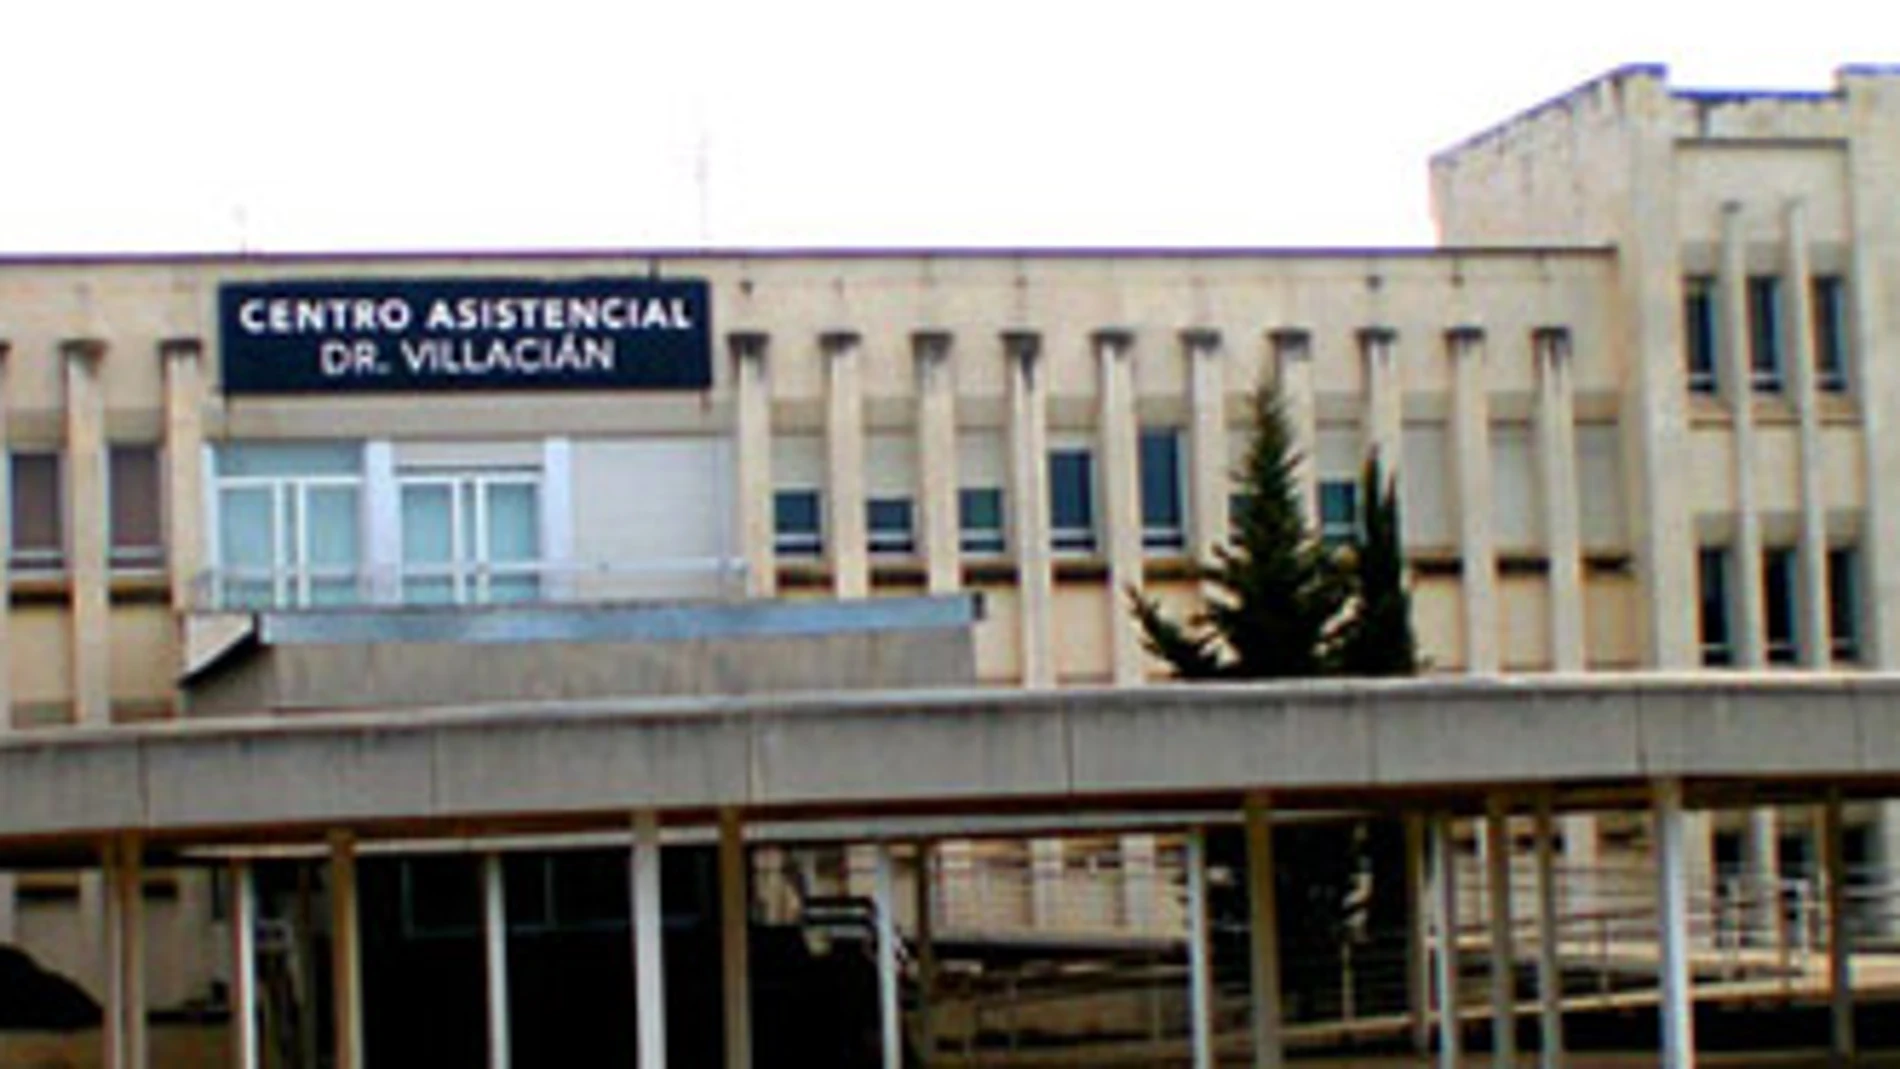 Centro Doctor Villacián de Valladolid